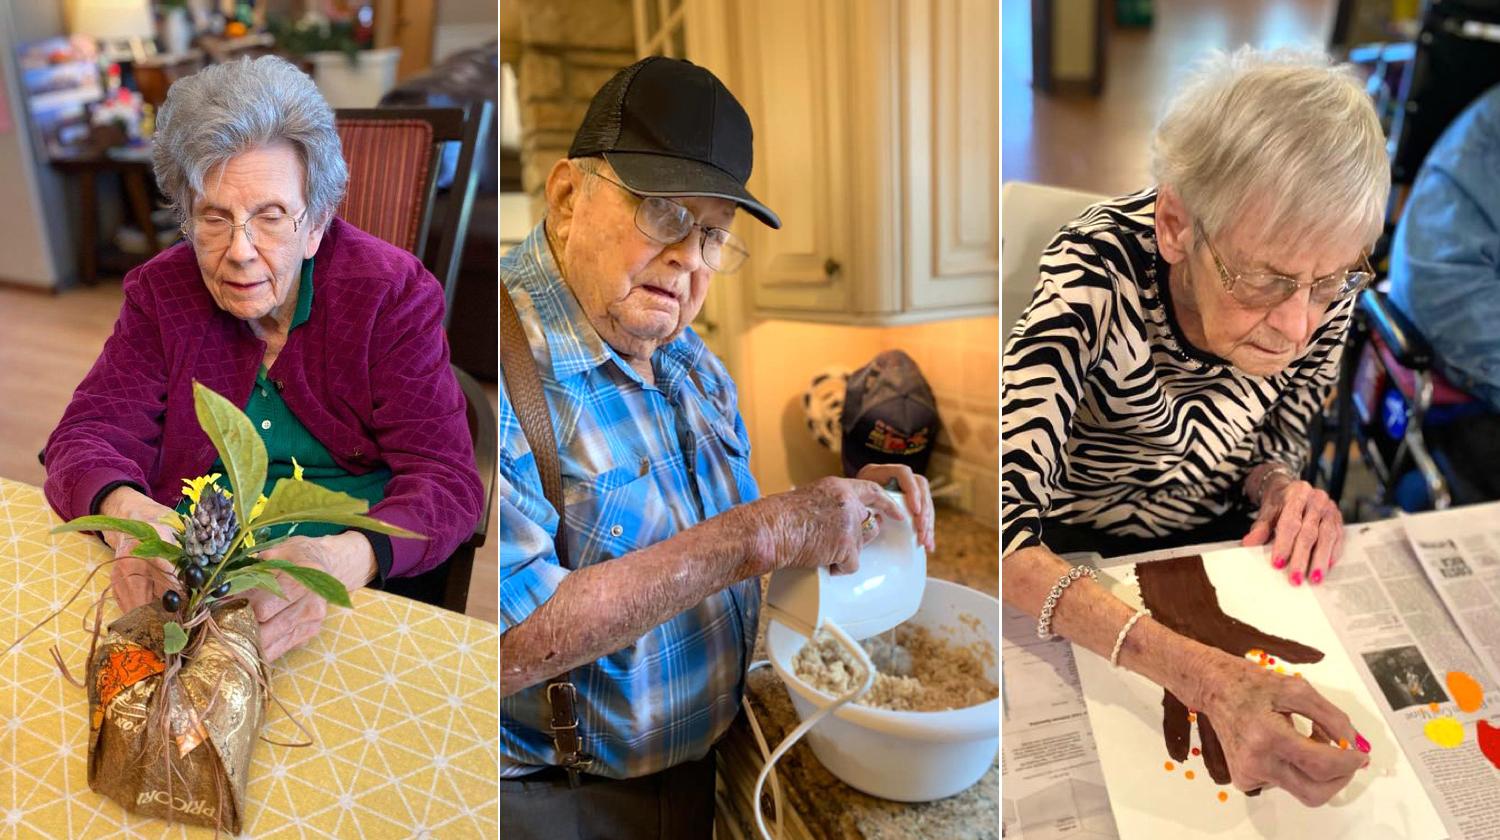 Elderly residents exploring hobbies